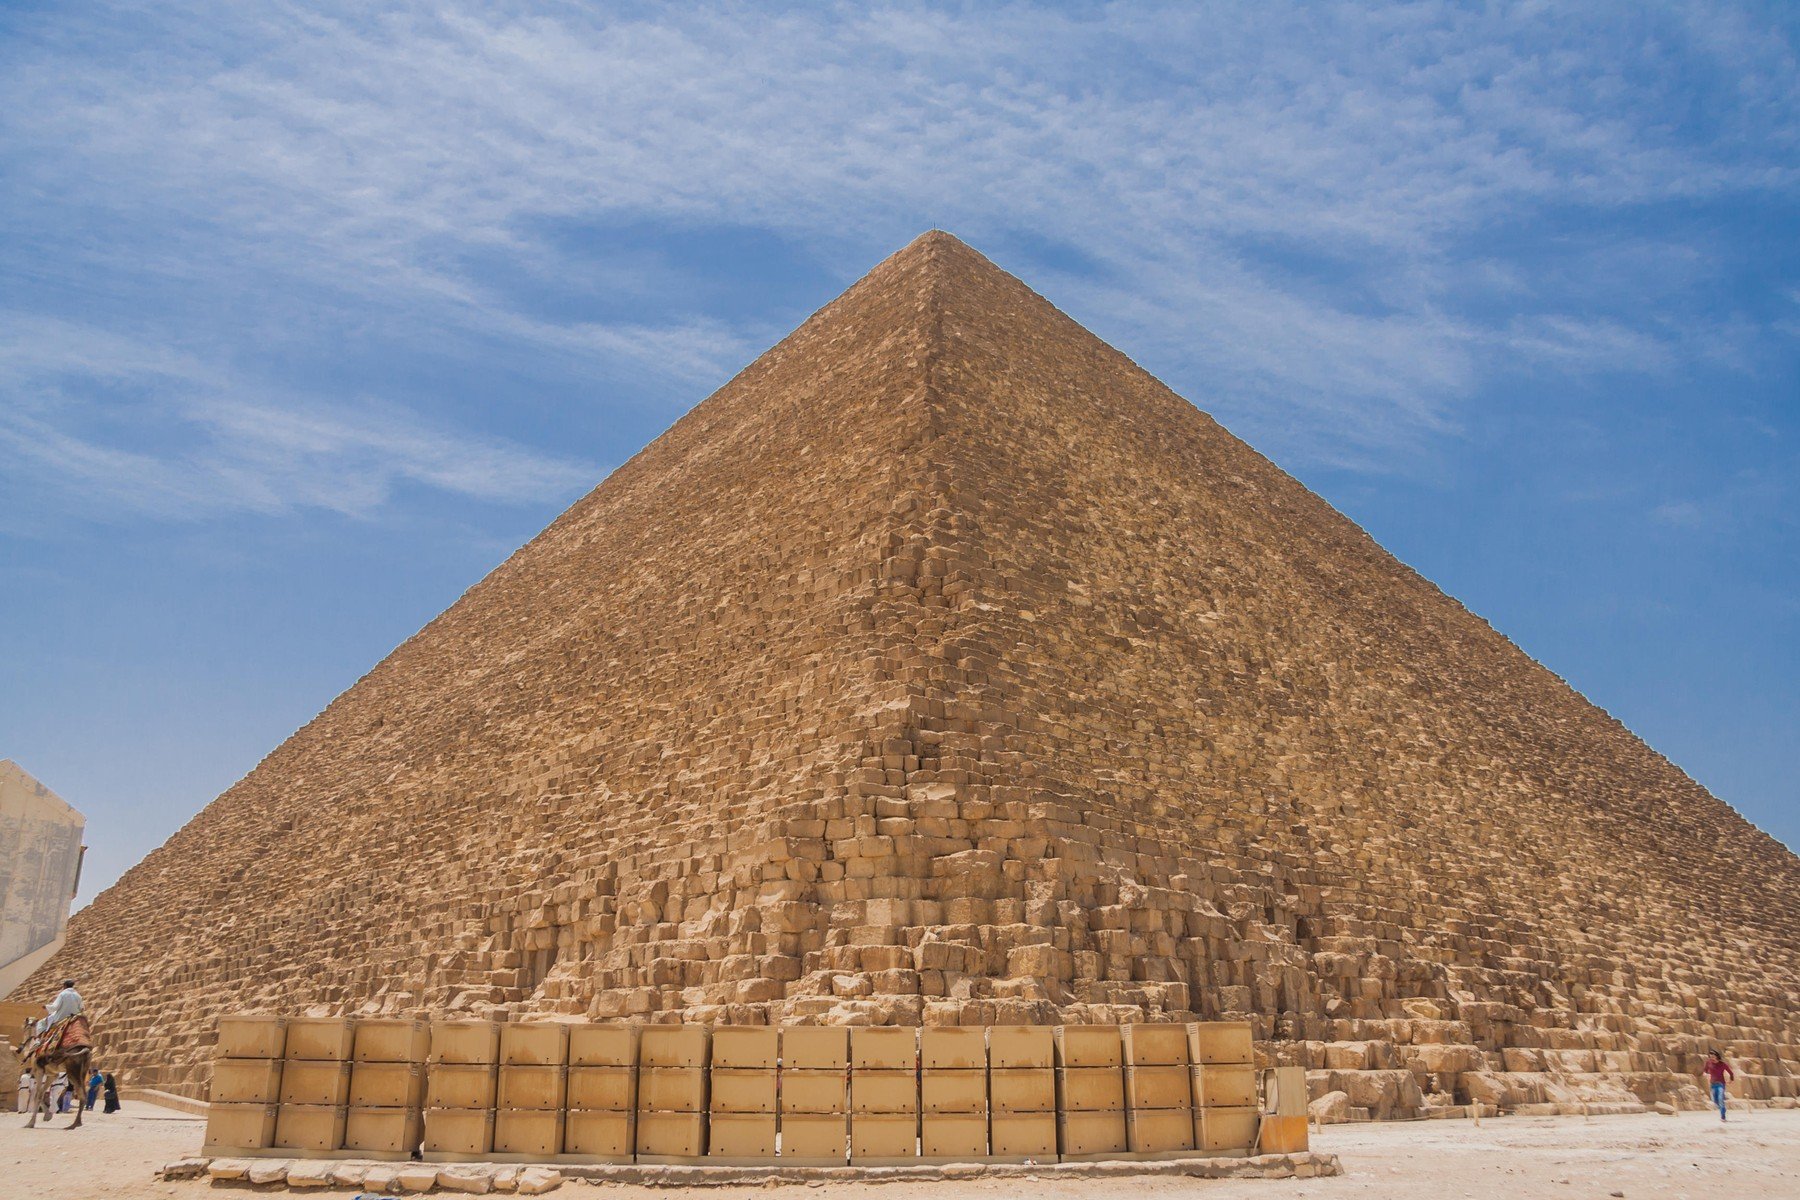 Rendkívüli dolgot találtak az egyiptomi piramisok alatt, végre kiderülhet hogyan építették meg az elképesztő csodát